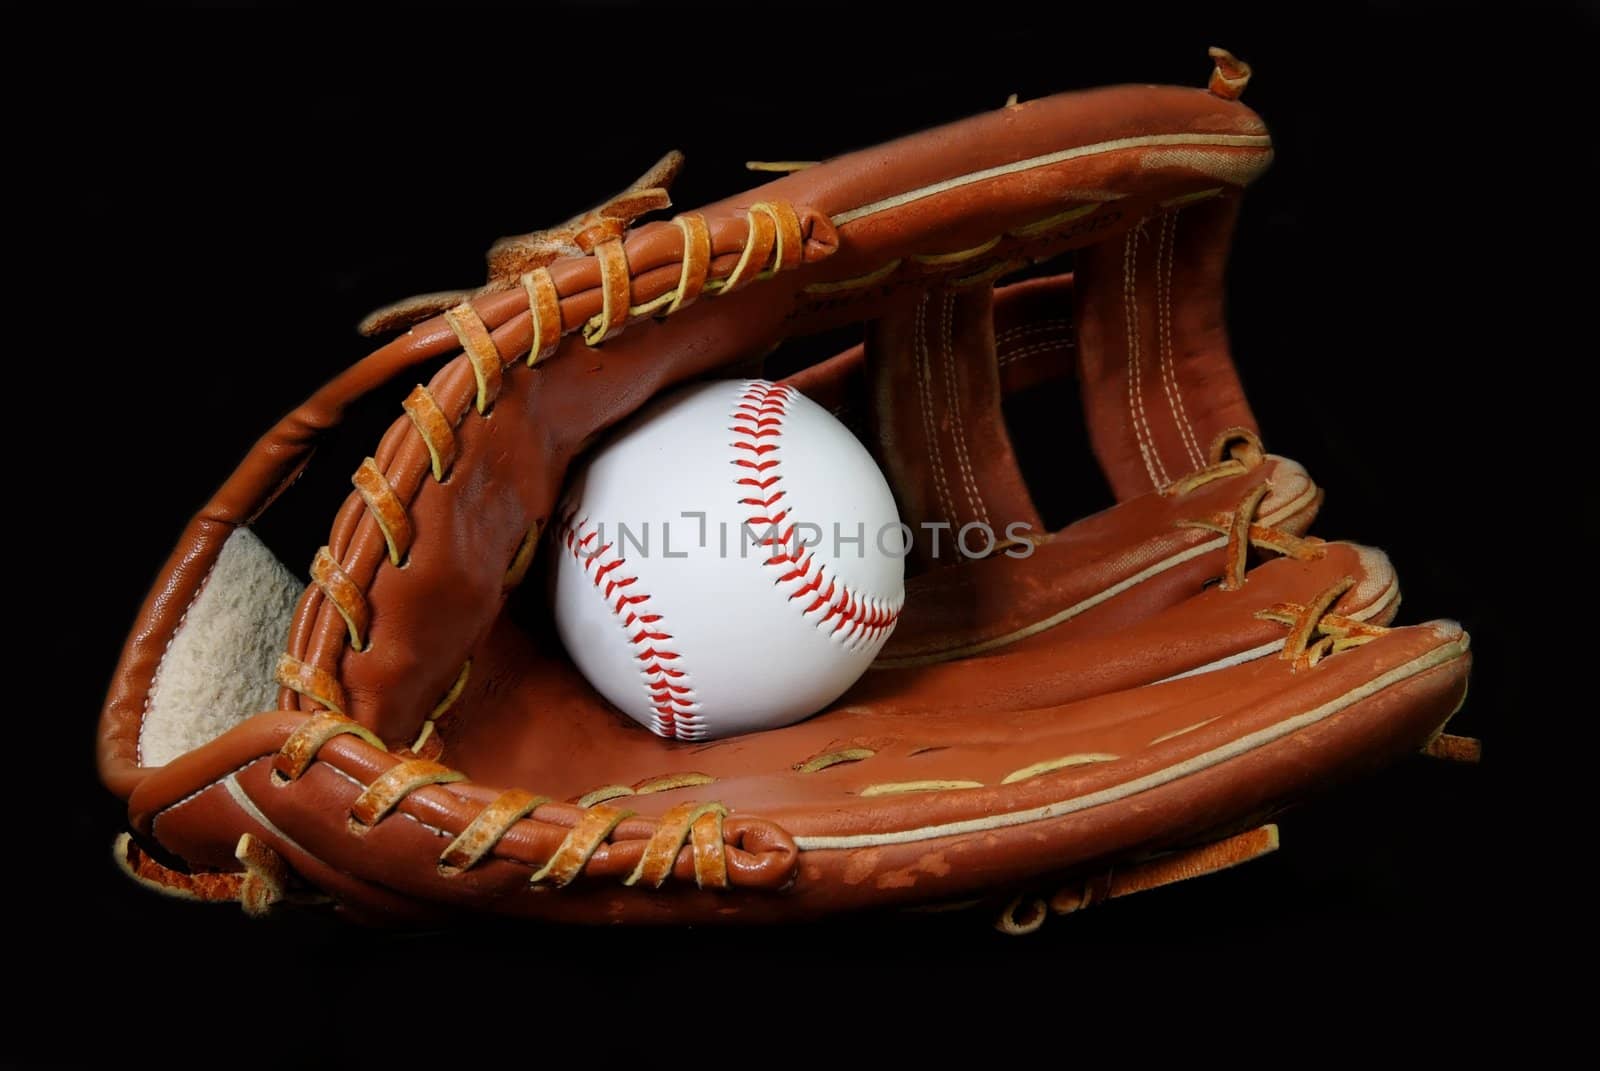 Baseball in Glove by dehooks